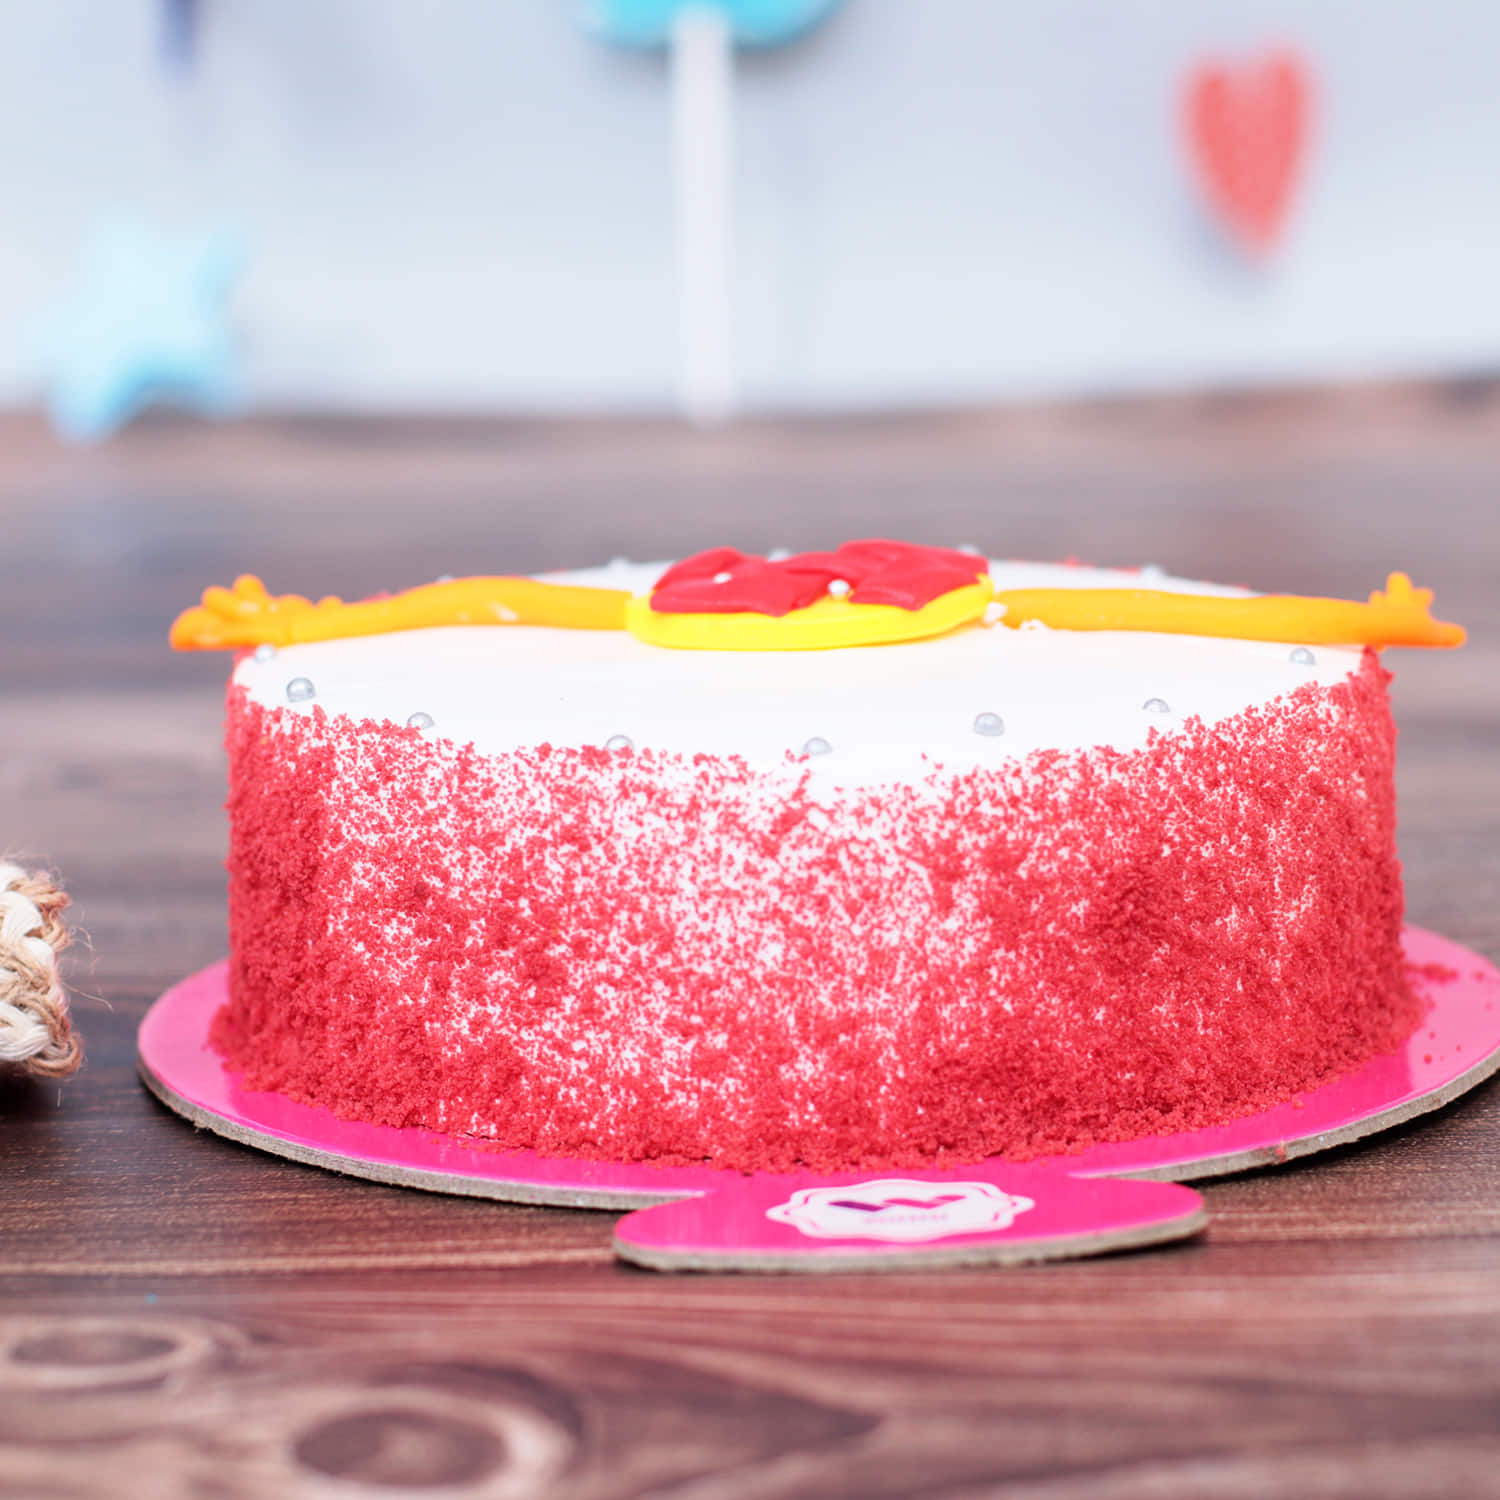 Mawa Cake Recipe | How to make Mawa Cake